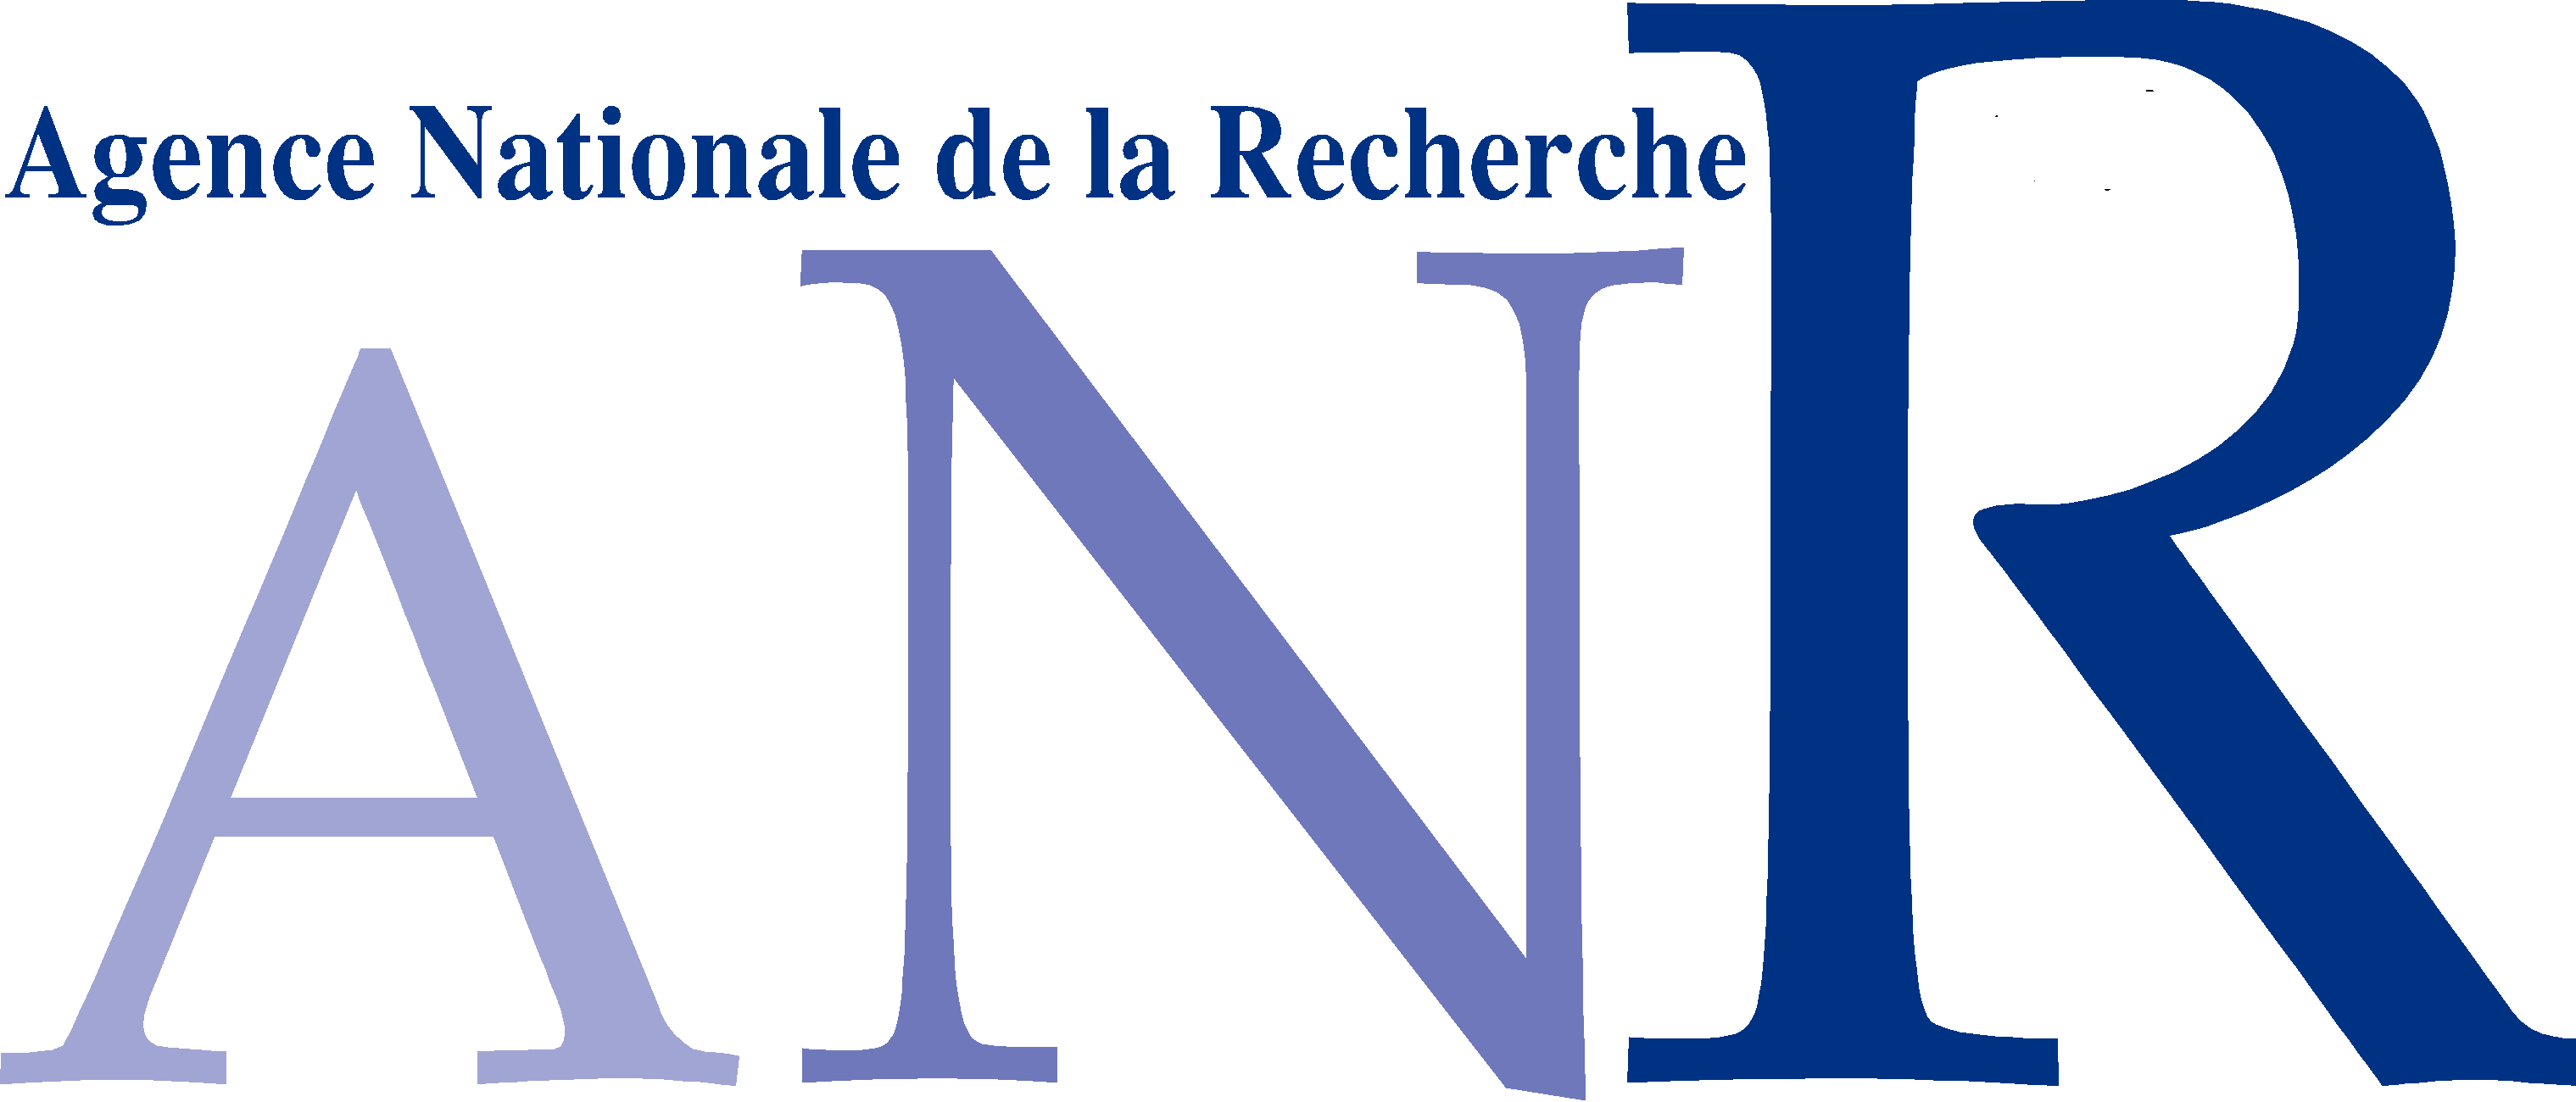 Agence Nationale de la Recherche